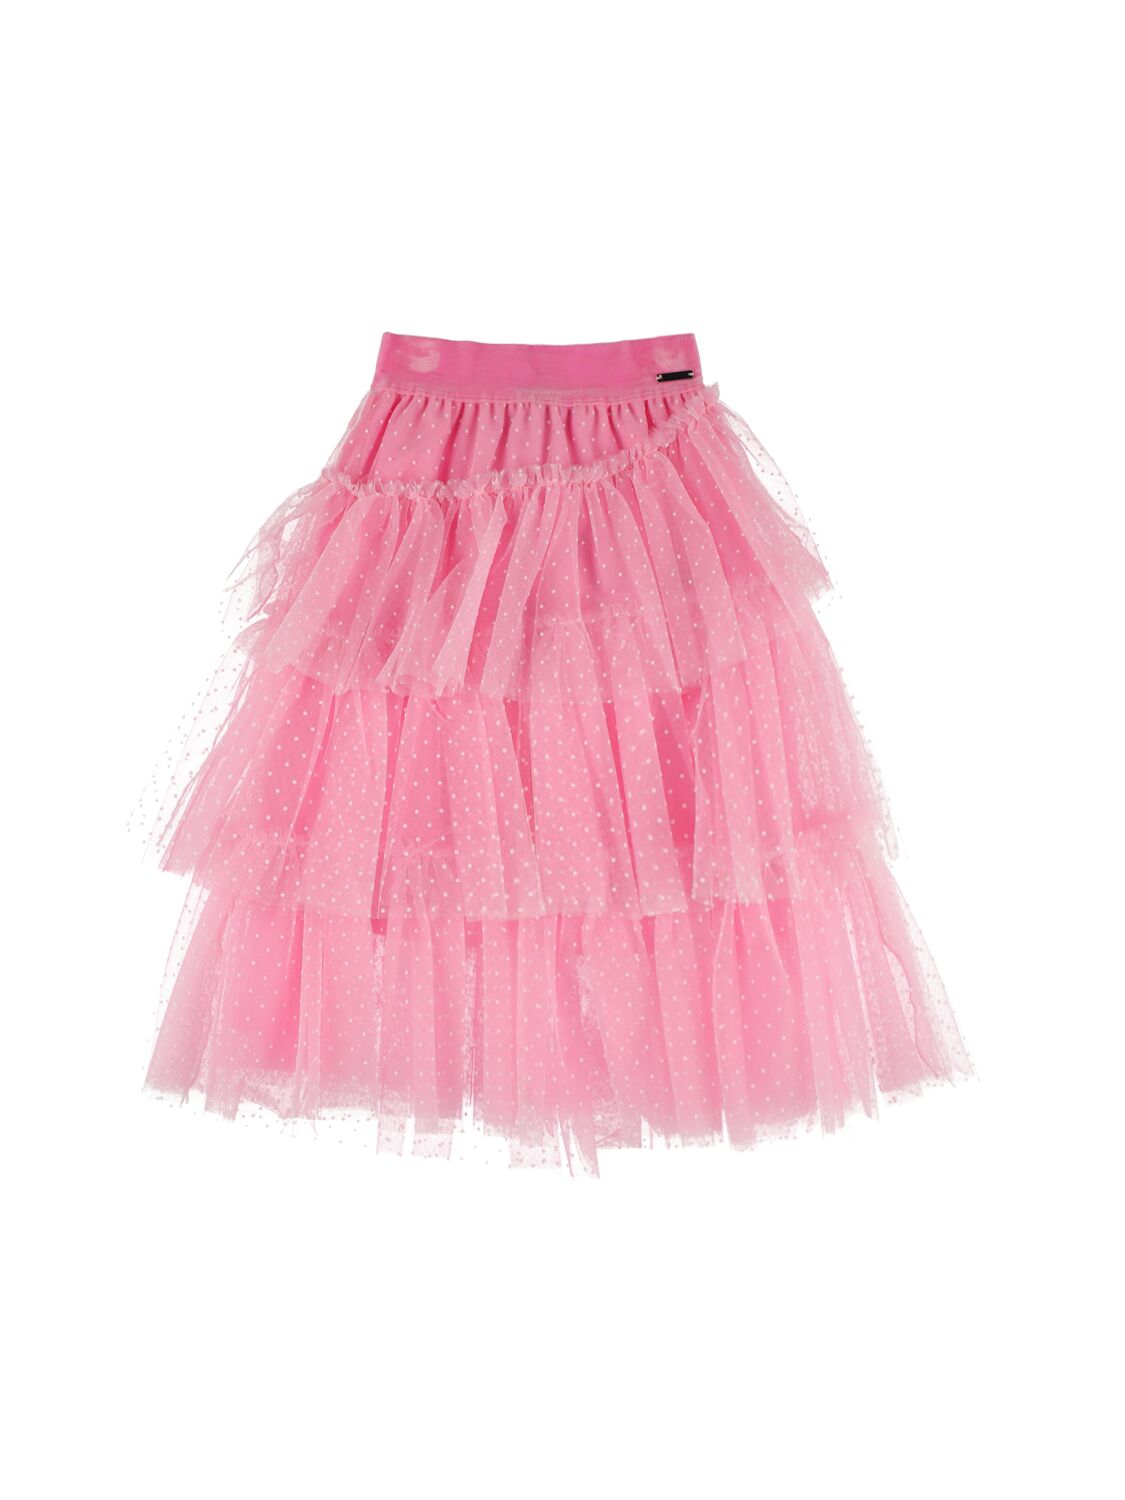 Monnalisa Kids' Flocked Polka Dot Tulle Skirt In Pink